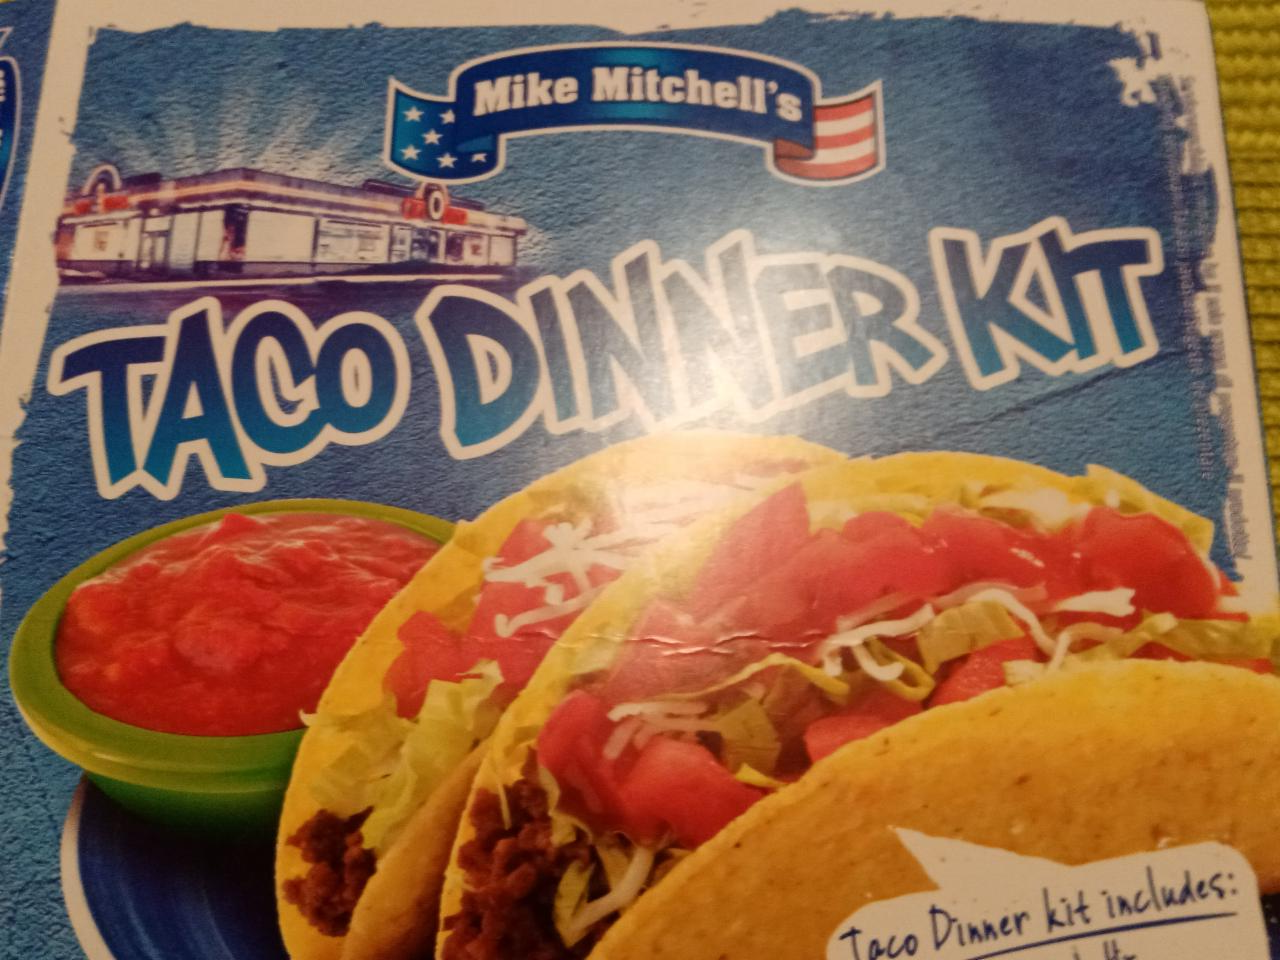 Fotografie - Taco dinner kit (kořenící přípravek) Mike Mitchell's